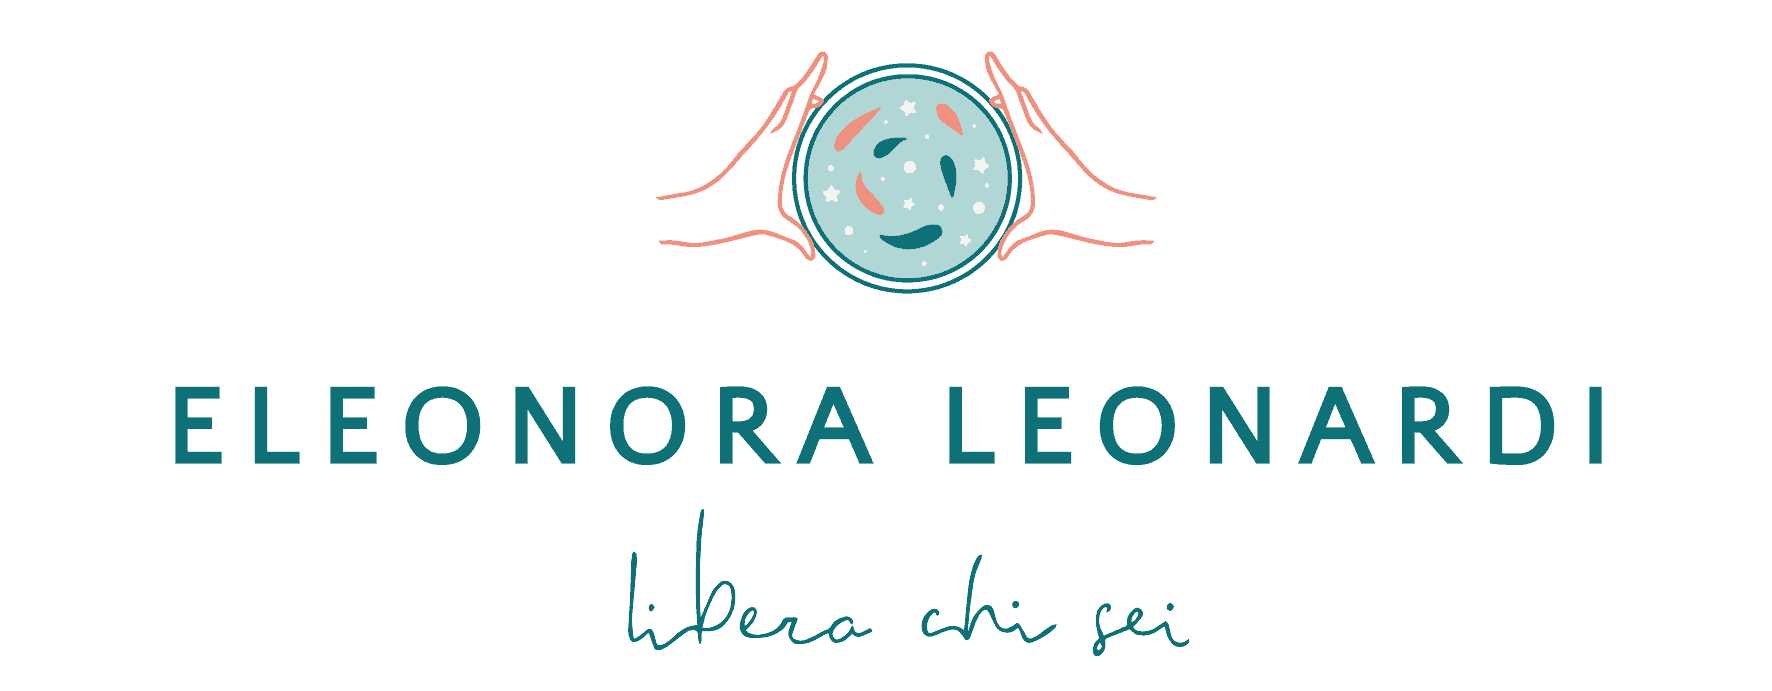 Logo Eleonora Leonardi libera chi sei che rappresenta uno specchio pieno di stelle e desideri